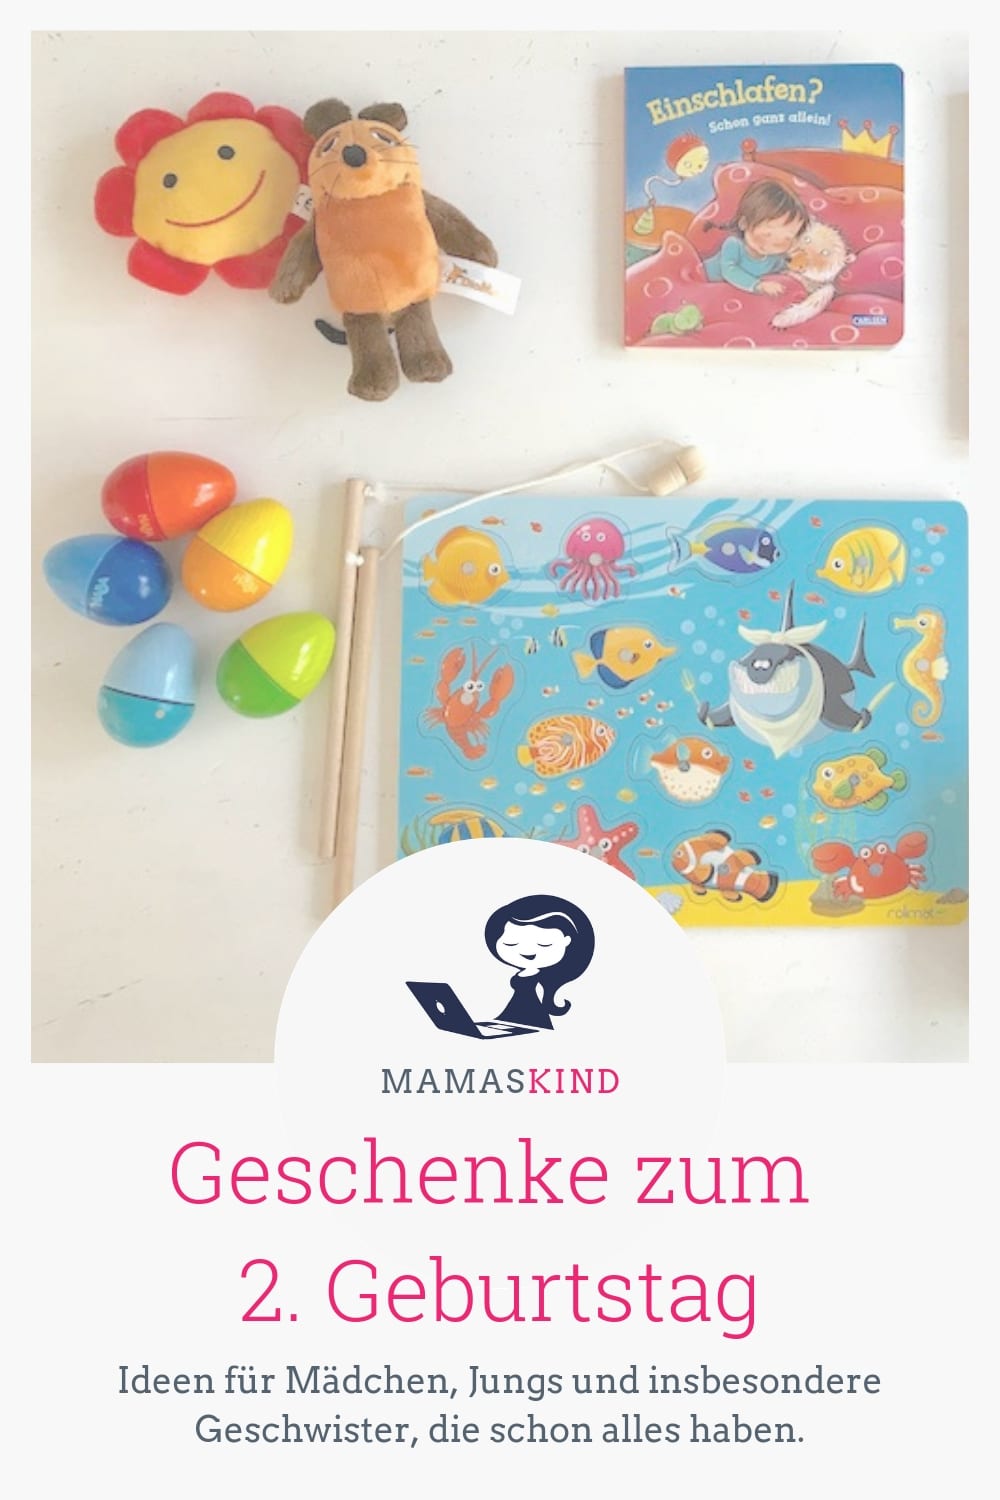 Geschenke zum 2. Geburtstag für Mädchen, Jungs und Geschwisterkinder | Mehr Infos und tolle Geschenk-Ideen für den zweiten Geburtstag auf Mamaskind.de